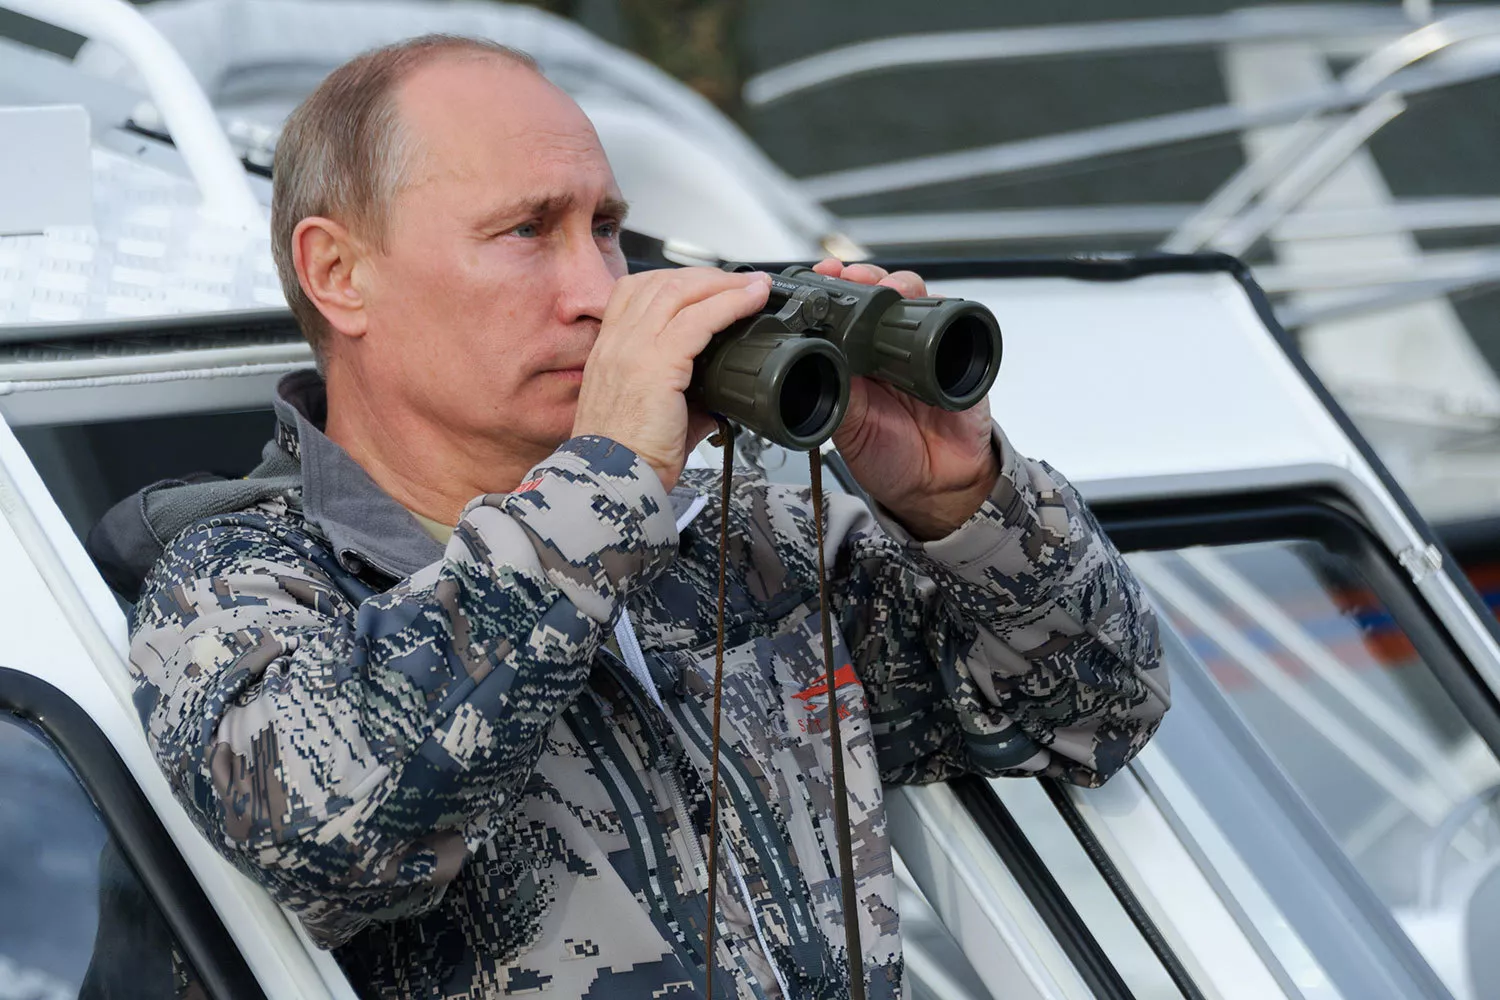 Увеличение интенсивности обстрелов – это очередной этап плана Путина по дестабилизации ситуации в Украине